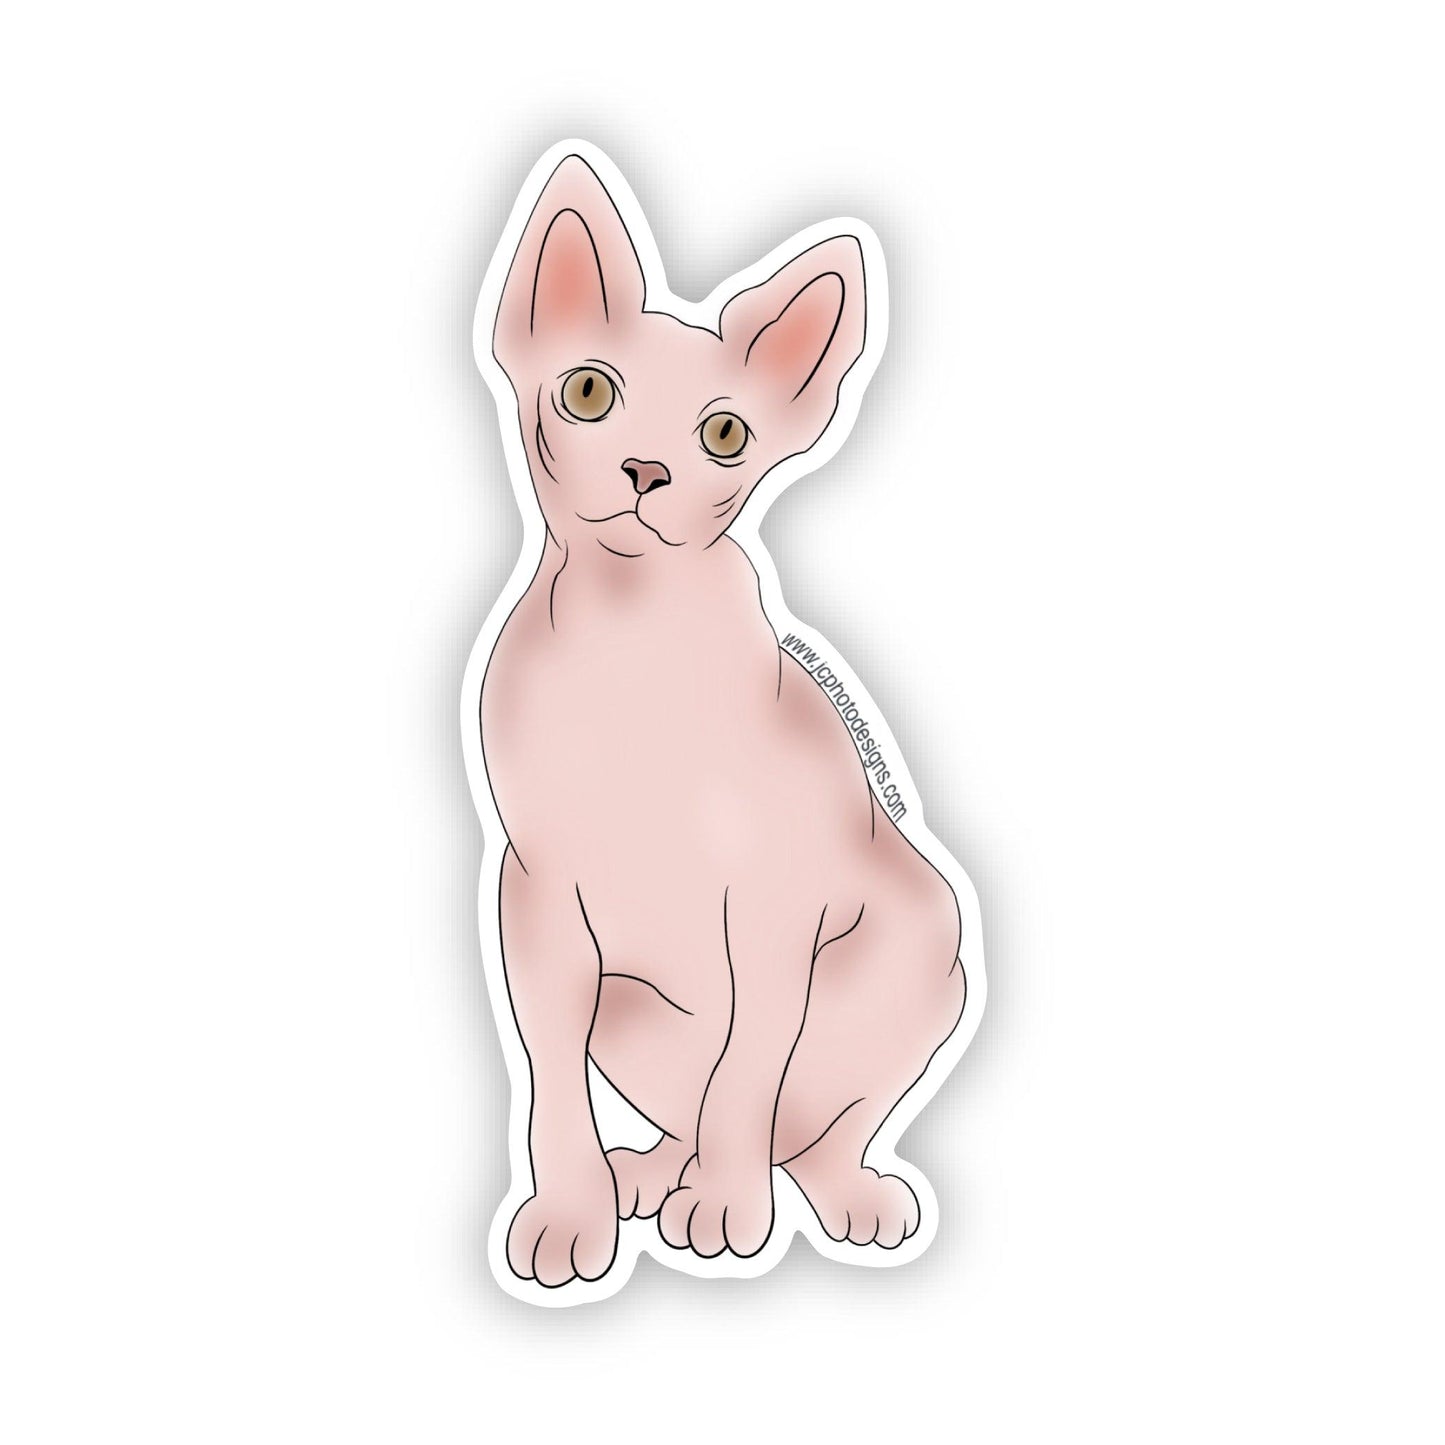 Sphynx Cat Sticker - Hairless Feline Charm Sticker - JC Designs